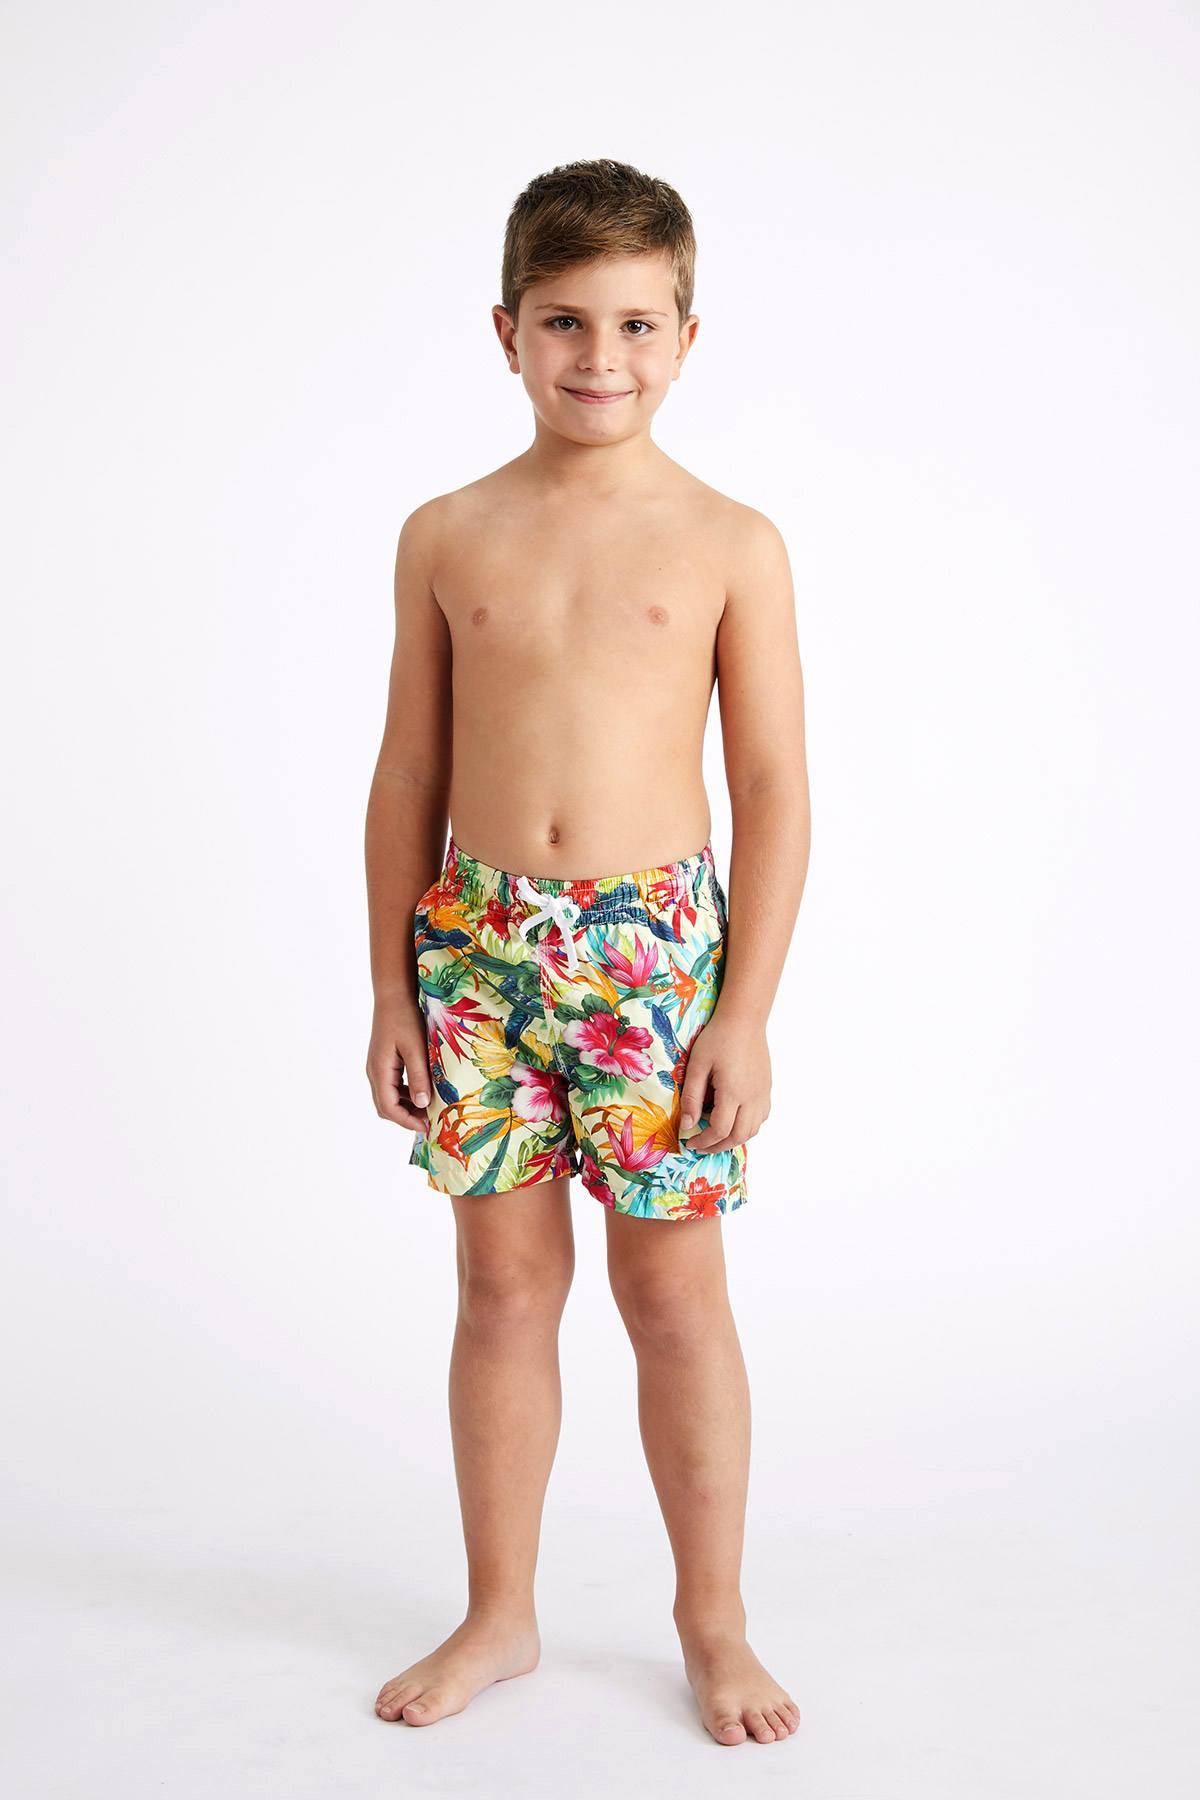 AmzBarley Moana Maui Costume Bambino Ragazzi Due Pezzi Costumi da Bagno Nuoto Cime Pantaloncini Calzoncini Berretto Mare Piscina Nuotare Vacanze Estive Carnevale Abbigliamento da Spiaggia 